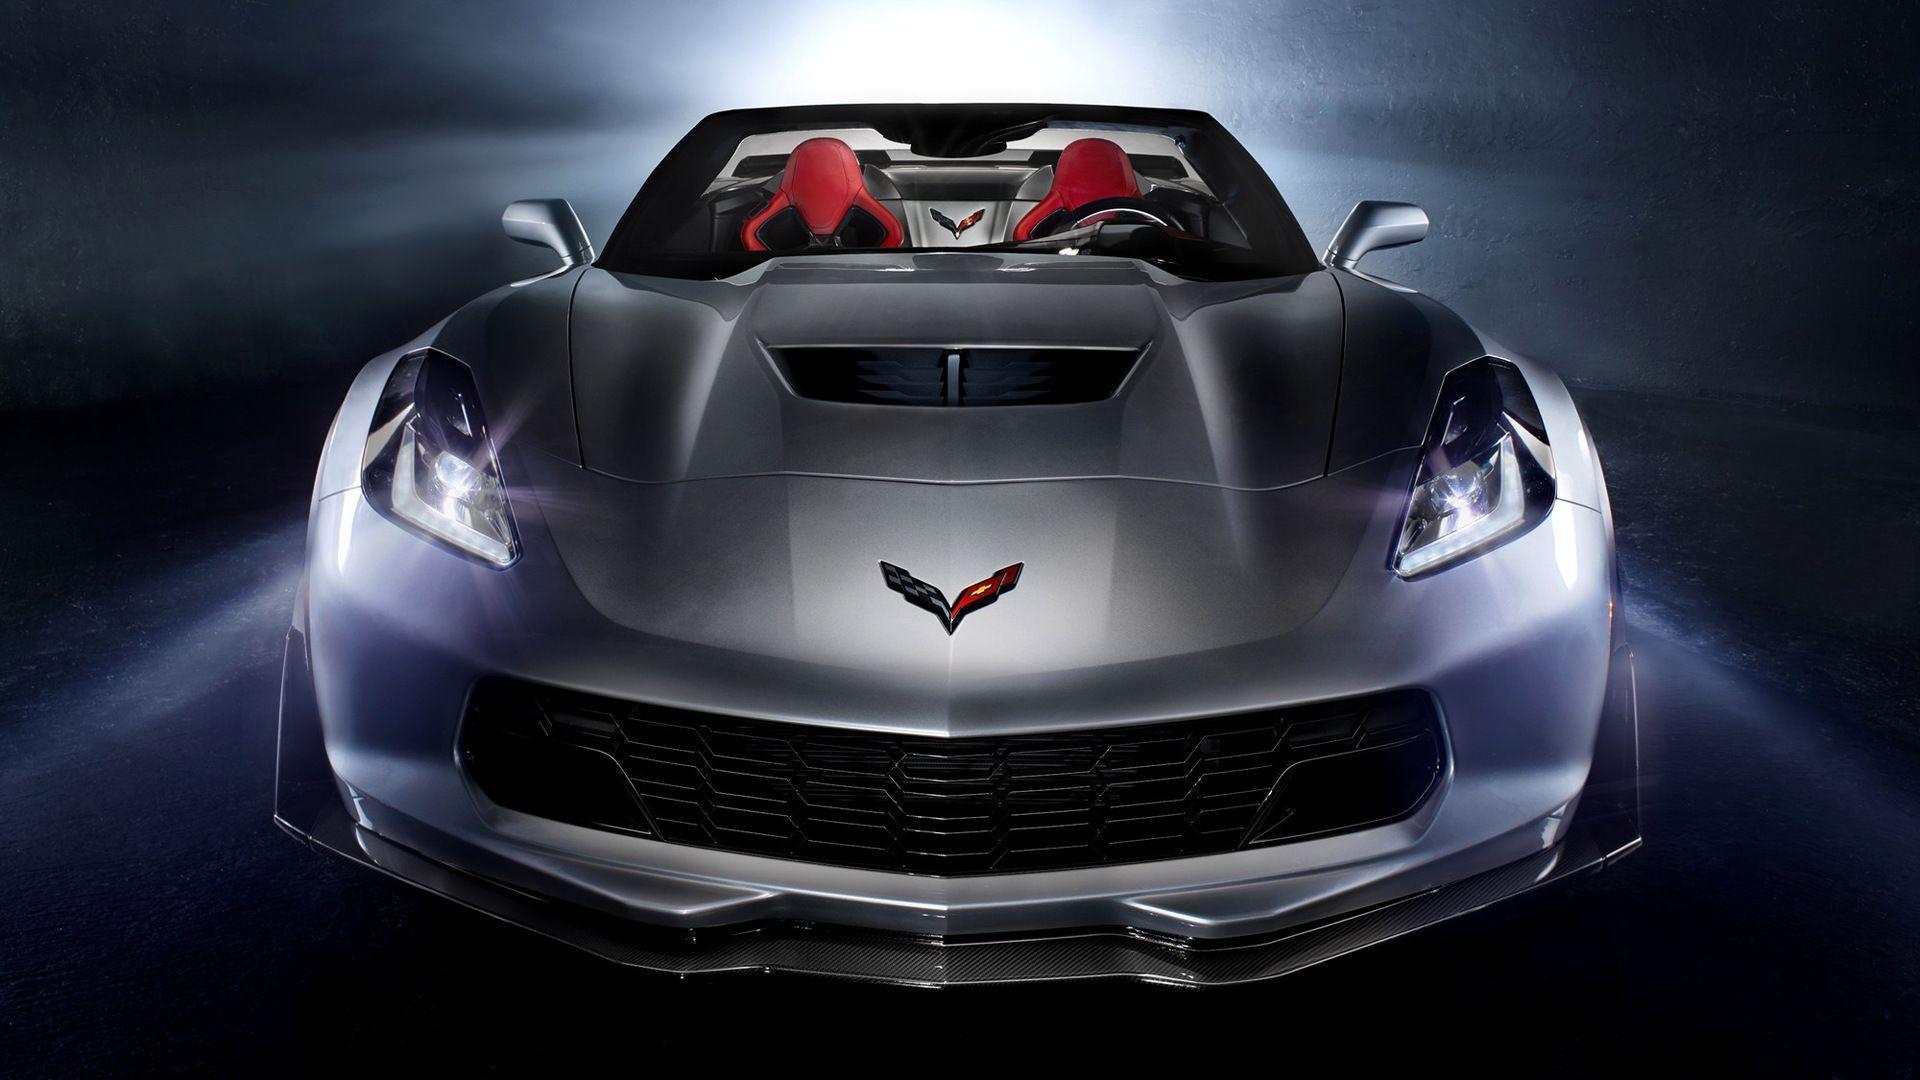 Corvette Wallpaper